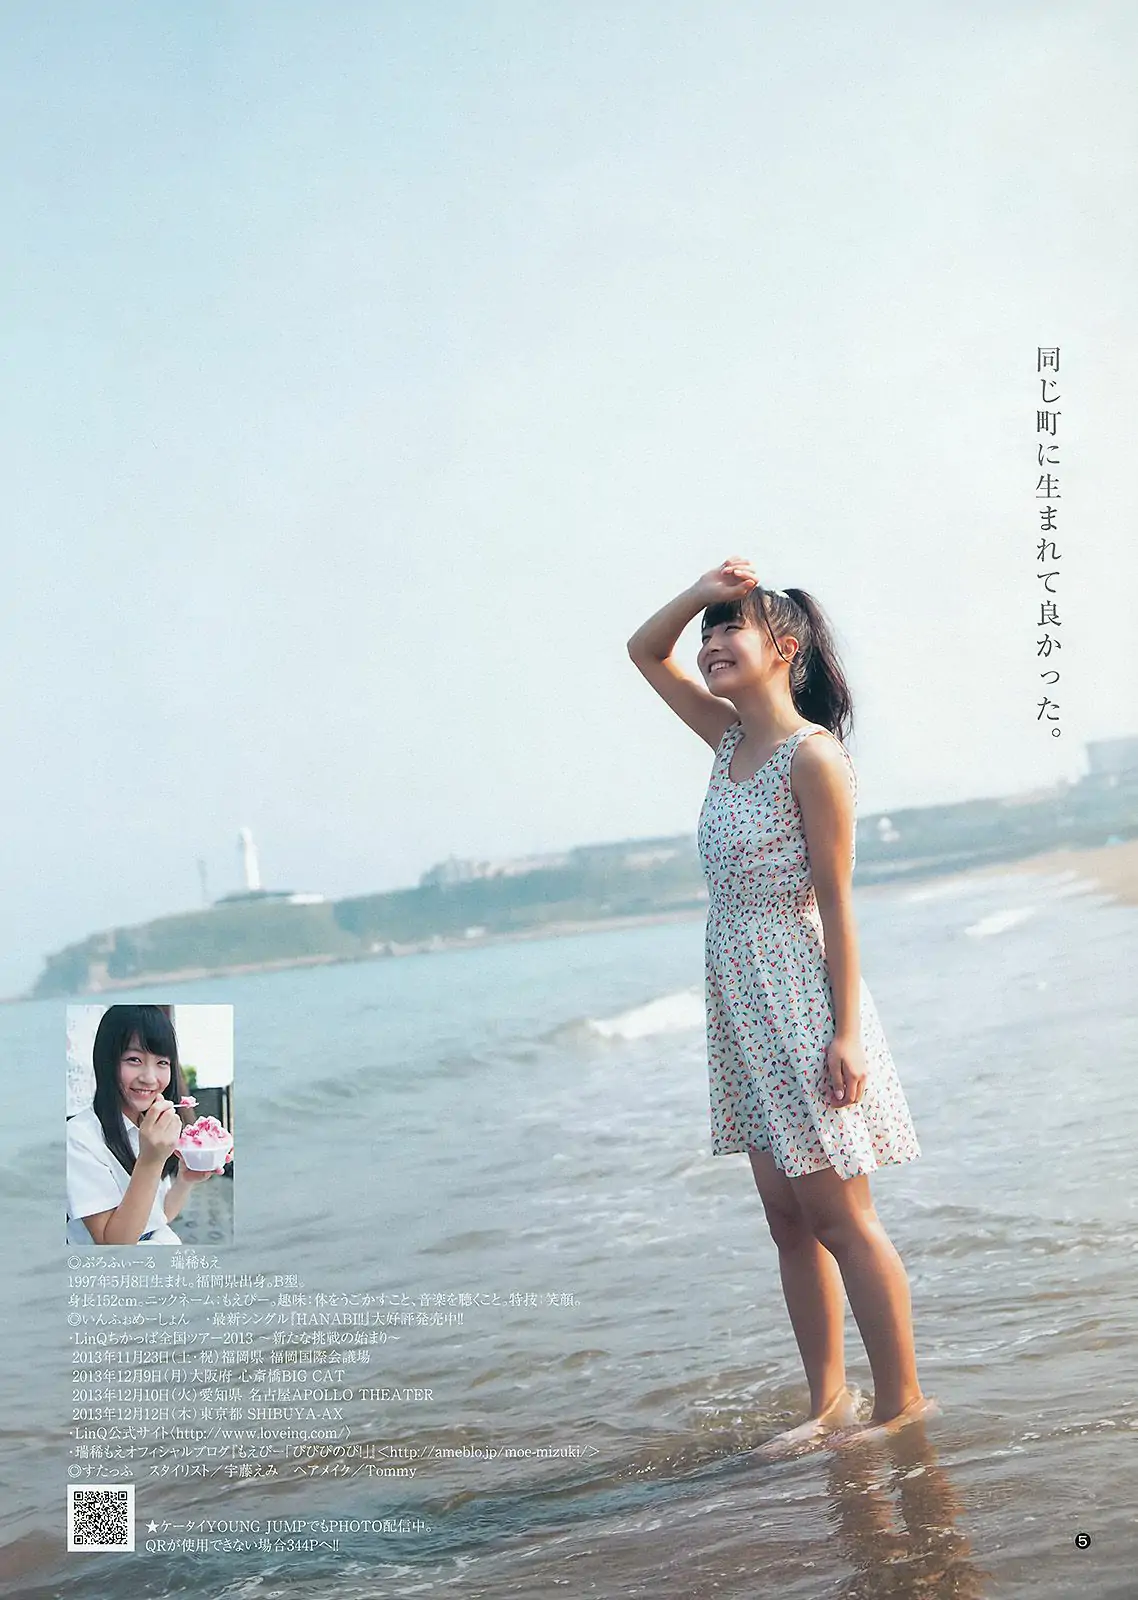 柏木由紀 まほりか(仮) 瑞稀もえ [Weekly Young Jump] 2013年No.43 写真杂志